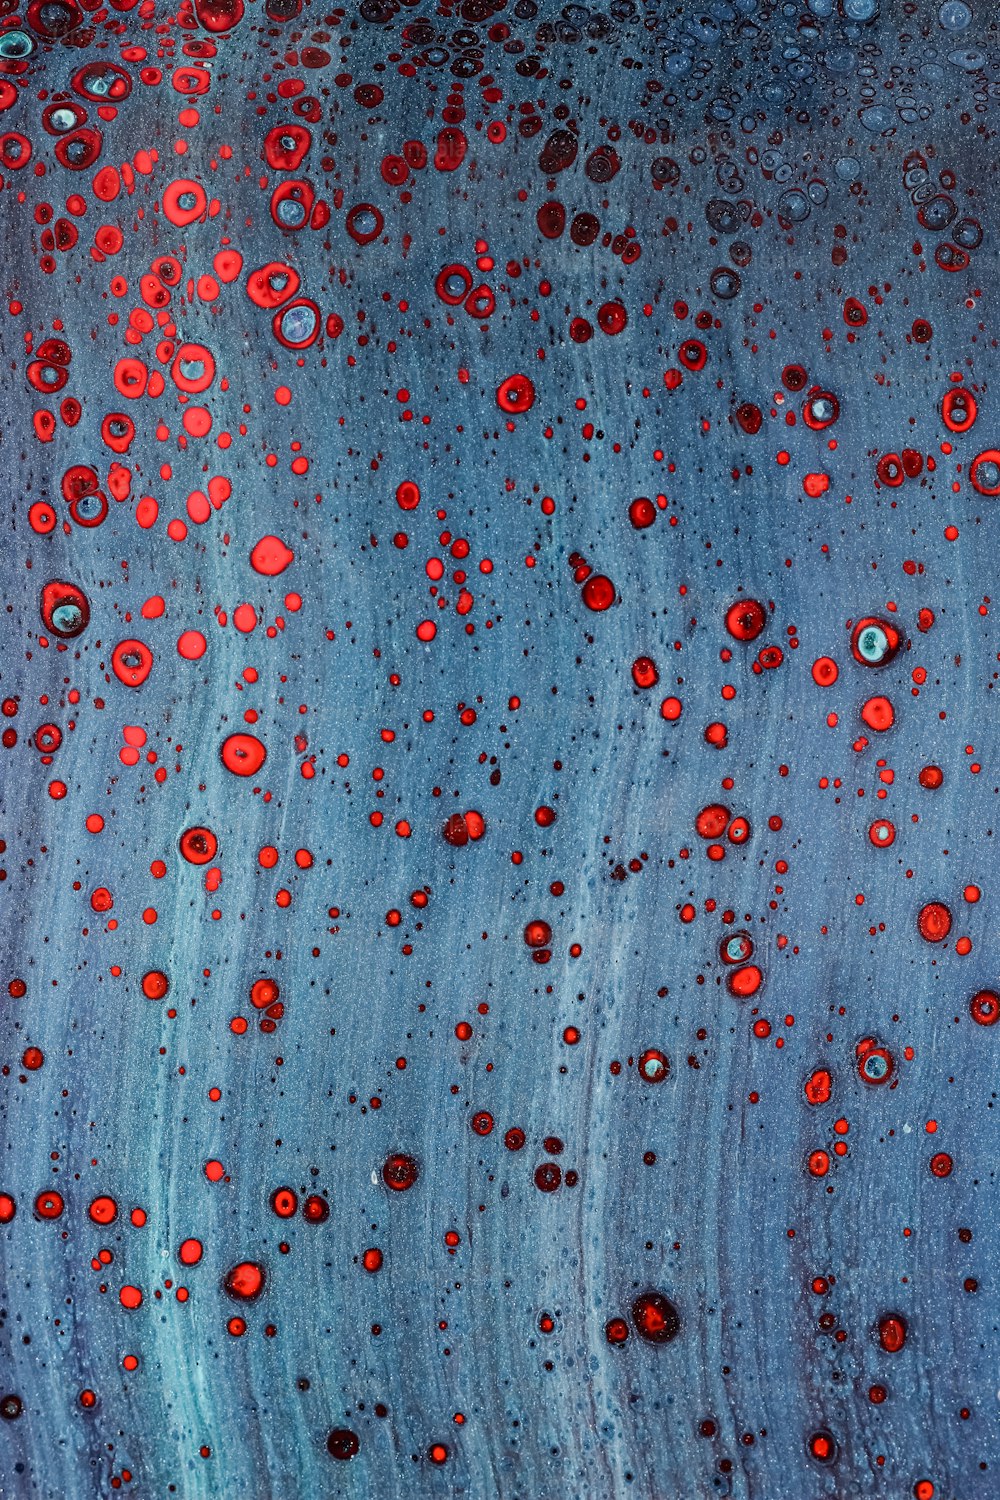 um close up de uma superfície azul com pontos vermelhos